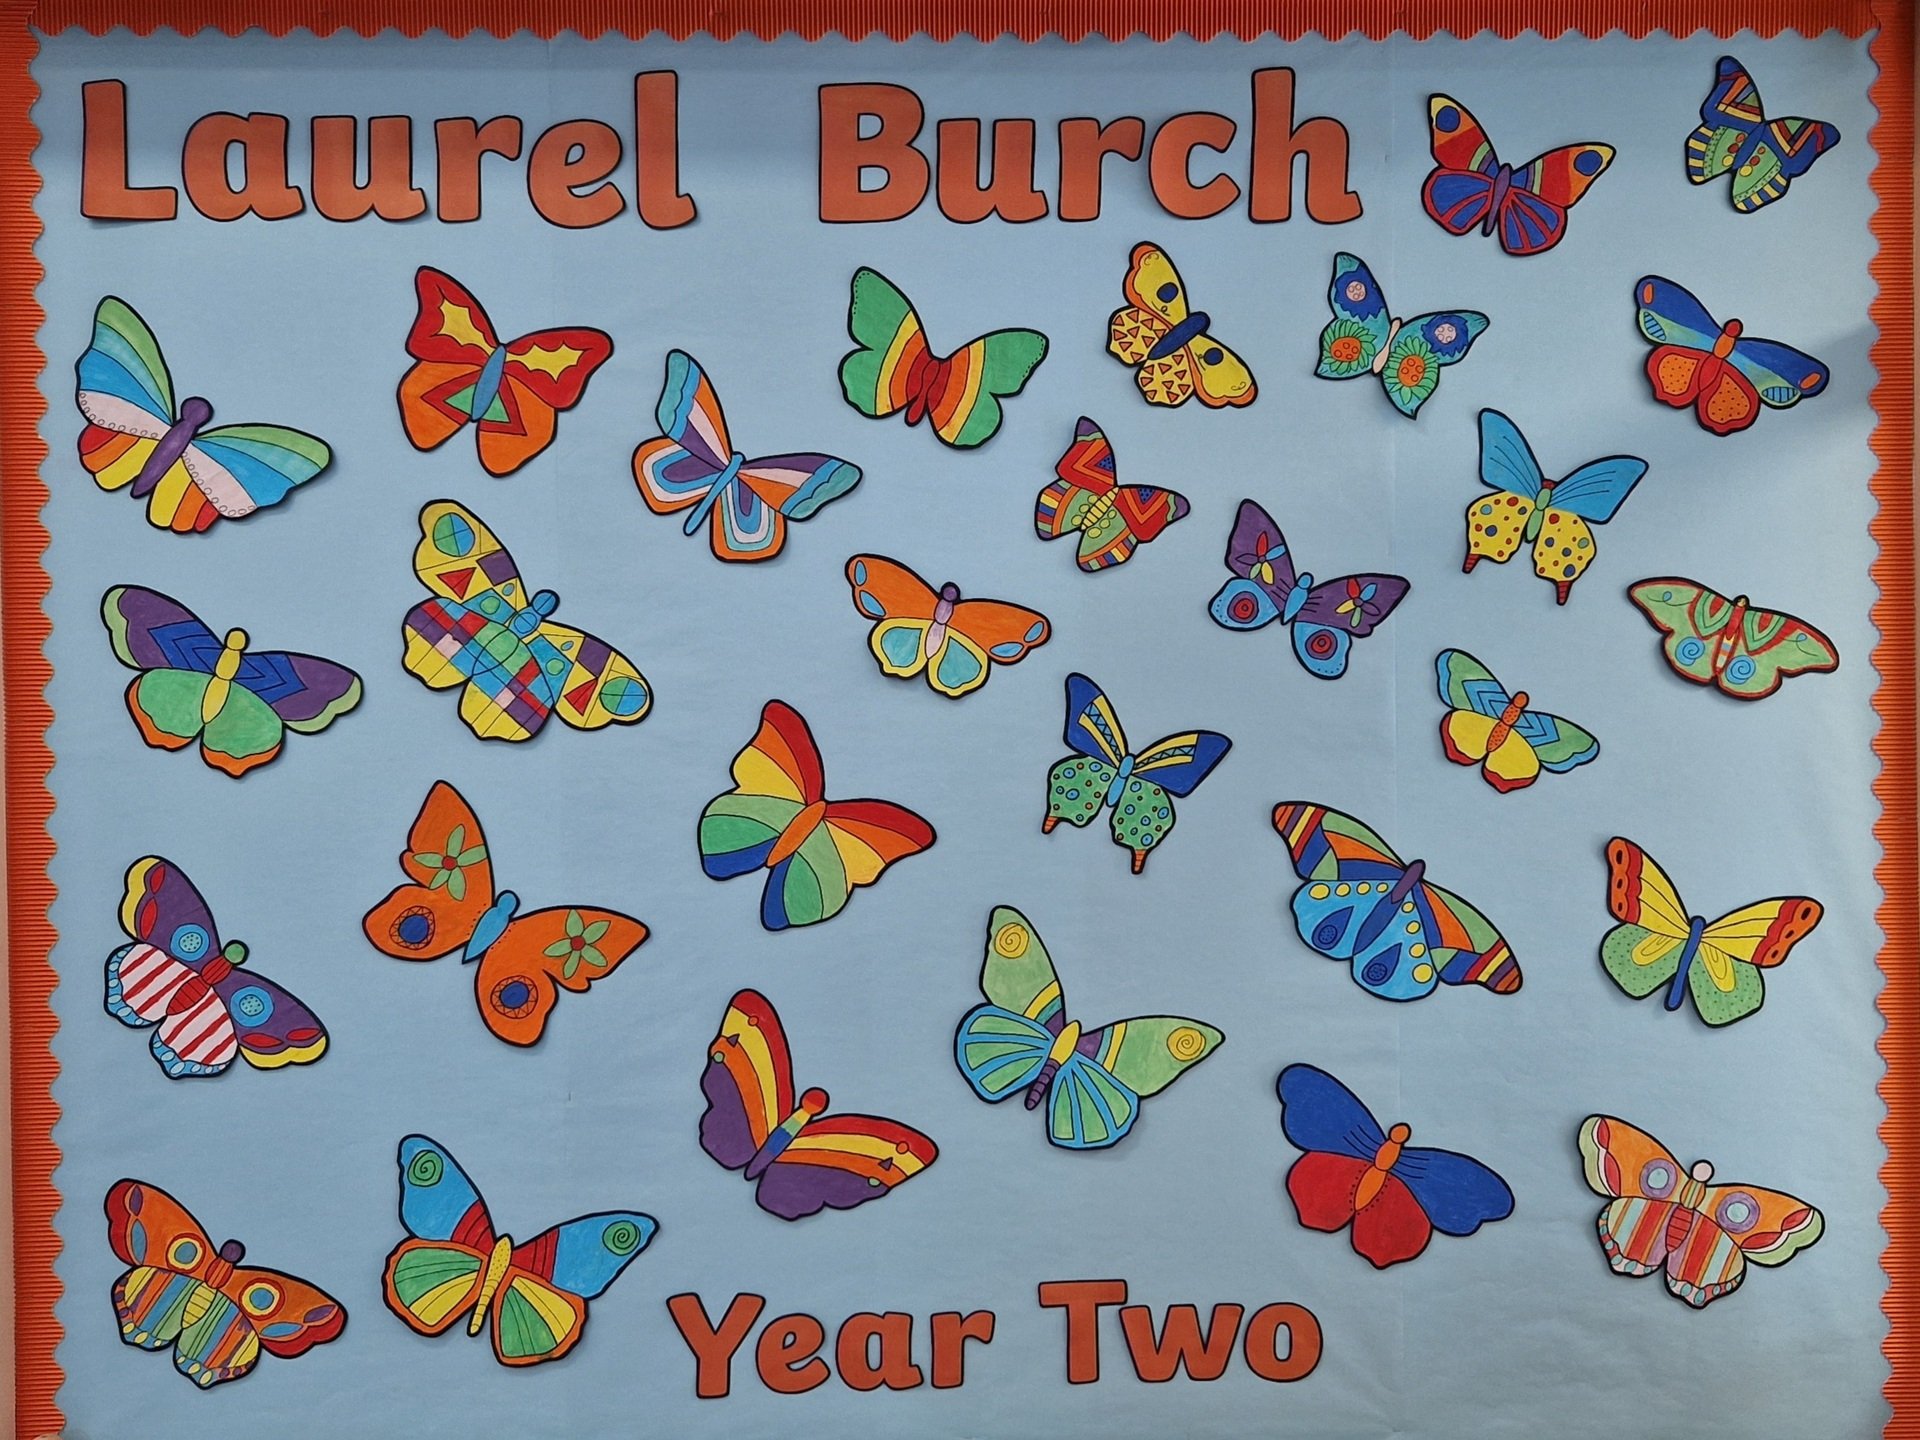 Laurel Burch by Year 2